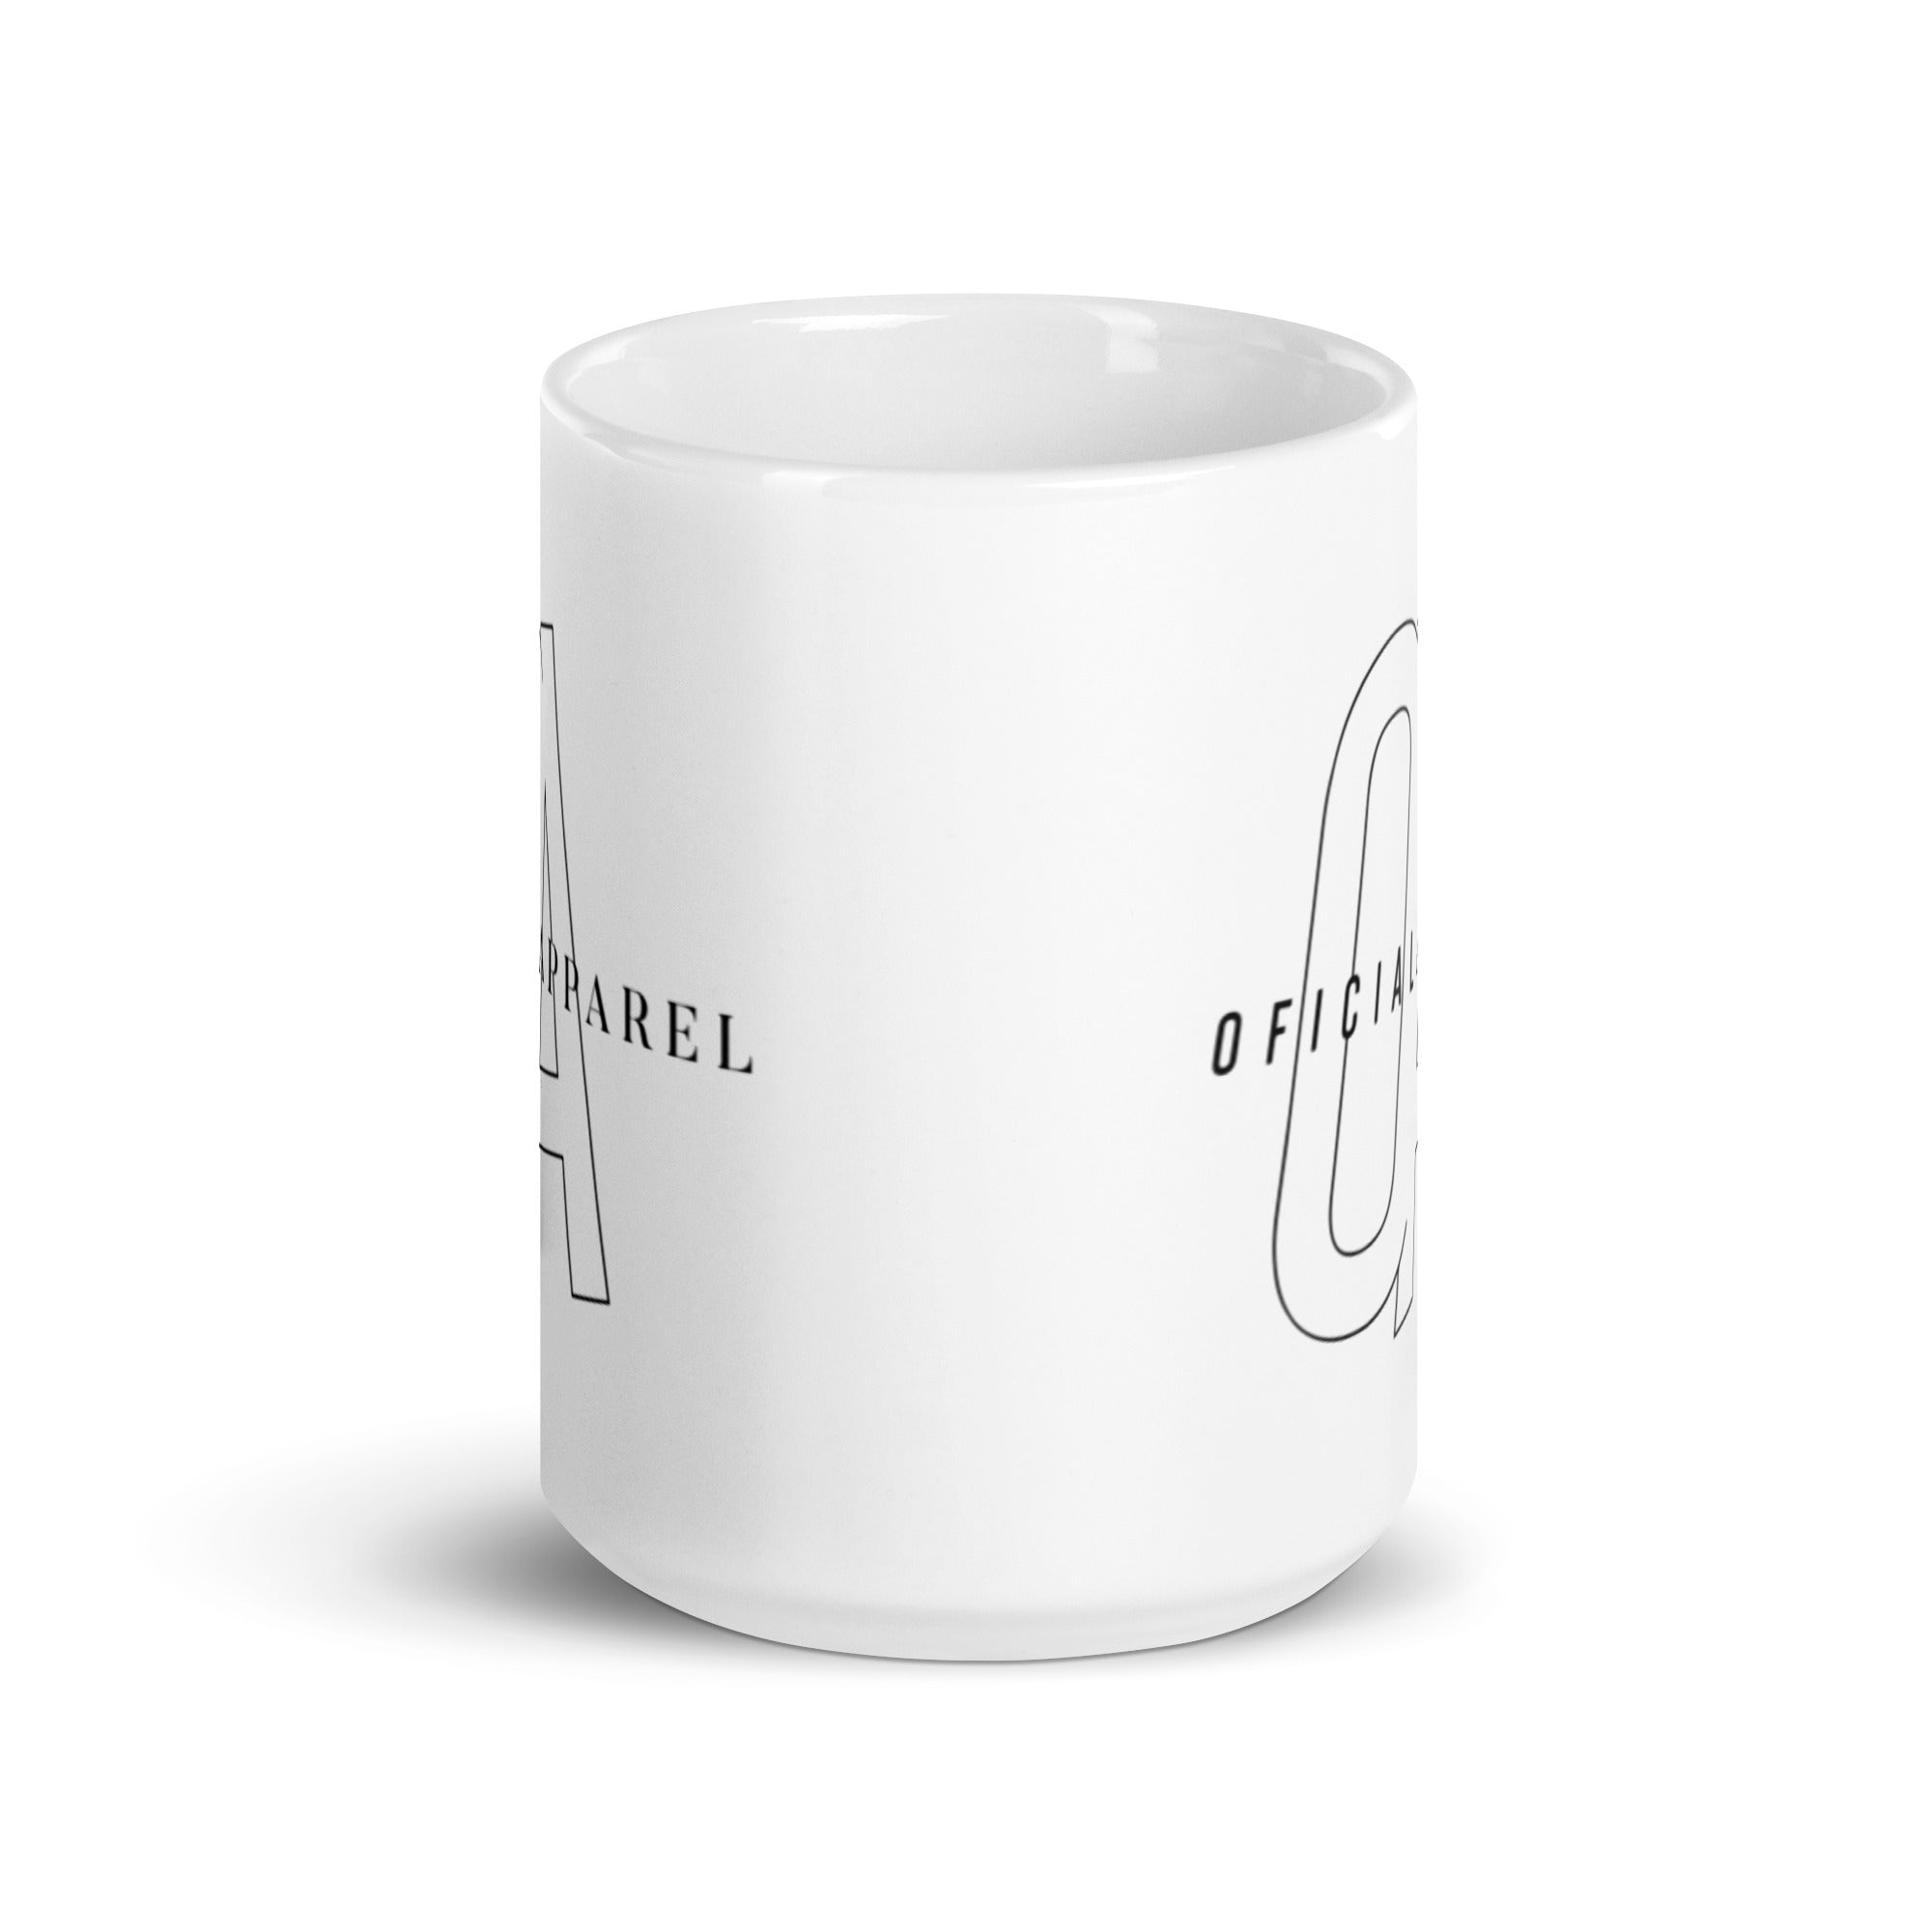 OFICIAL White glossy mug